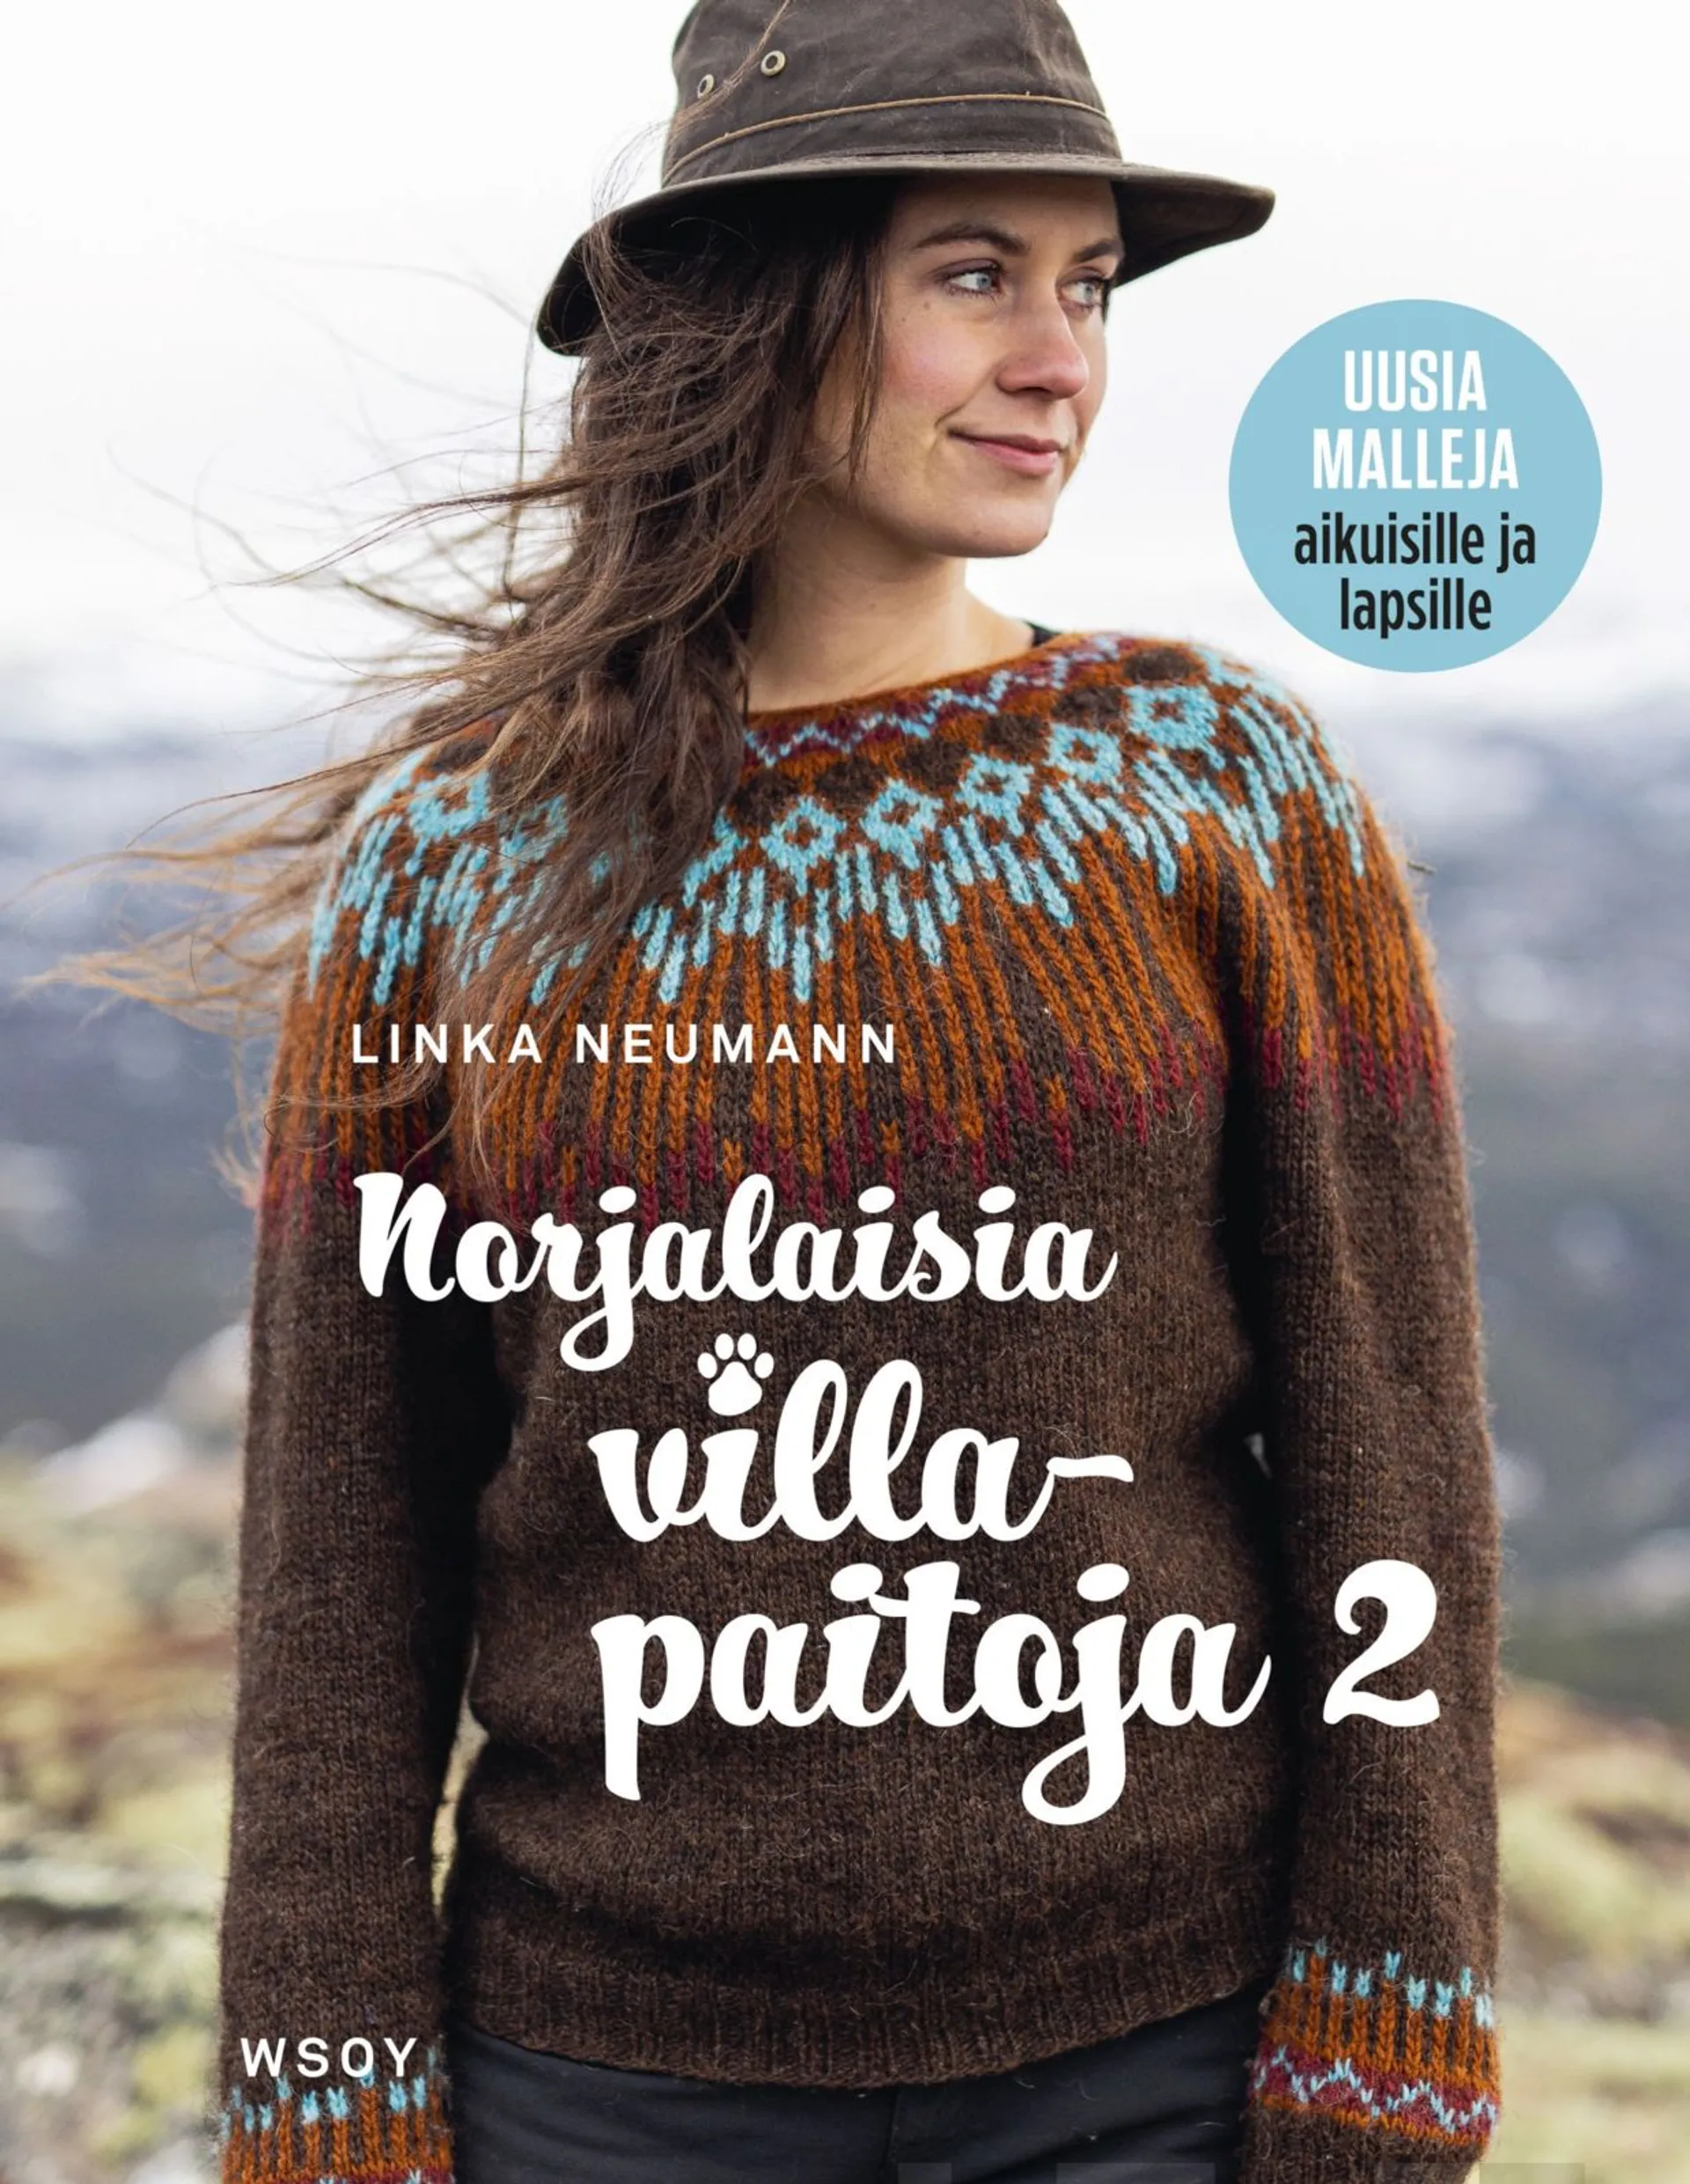 Neumann, Norjalaisia villapaitoja 2 - Lämpimiä villapaitoja pienille ja suurille seikkailijoille